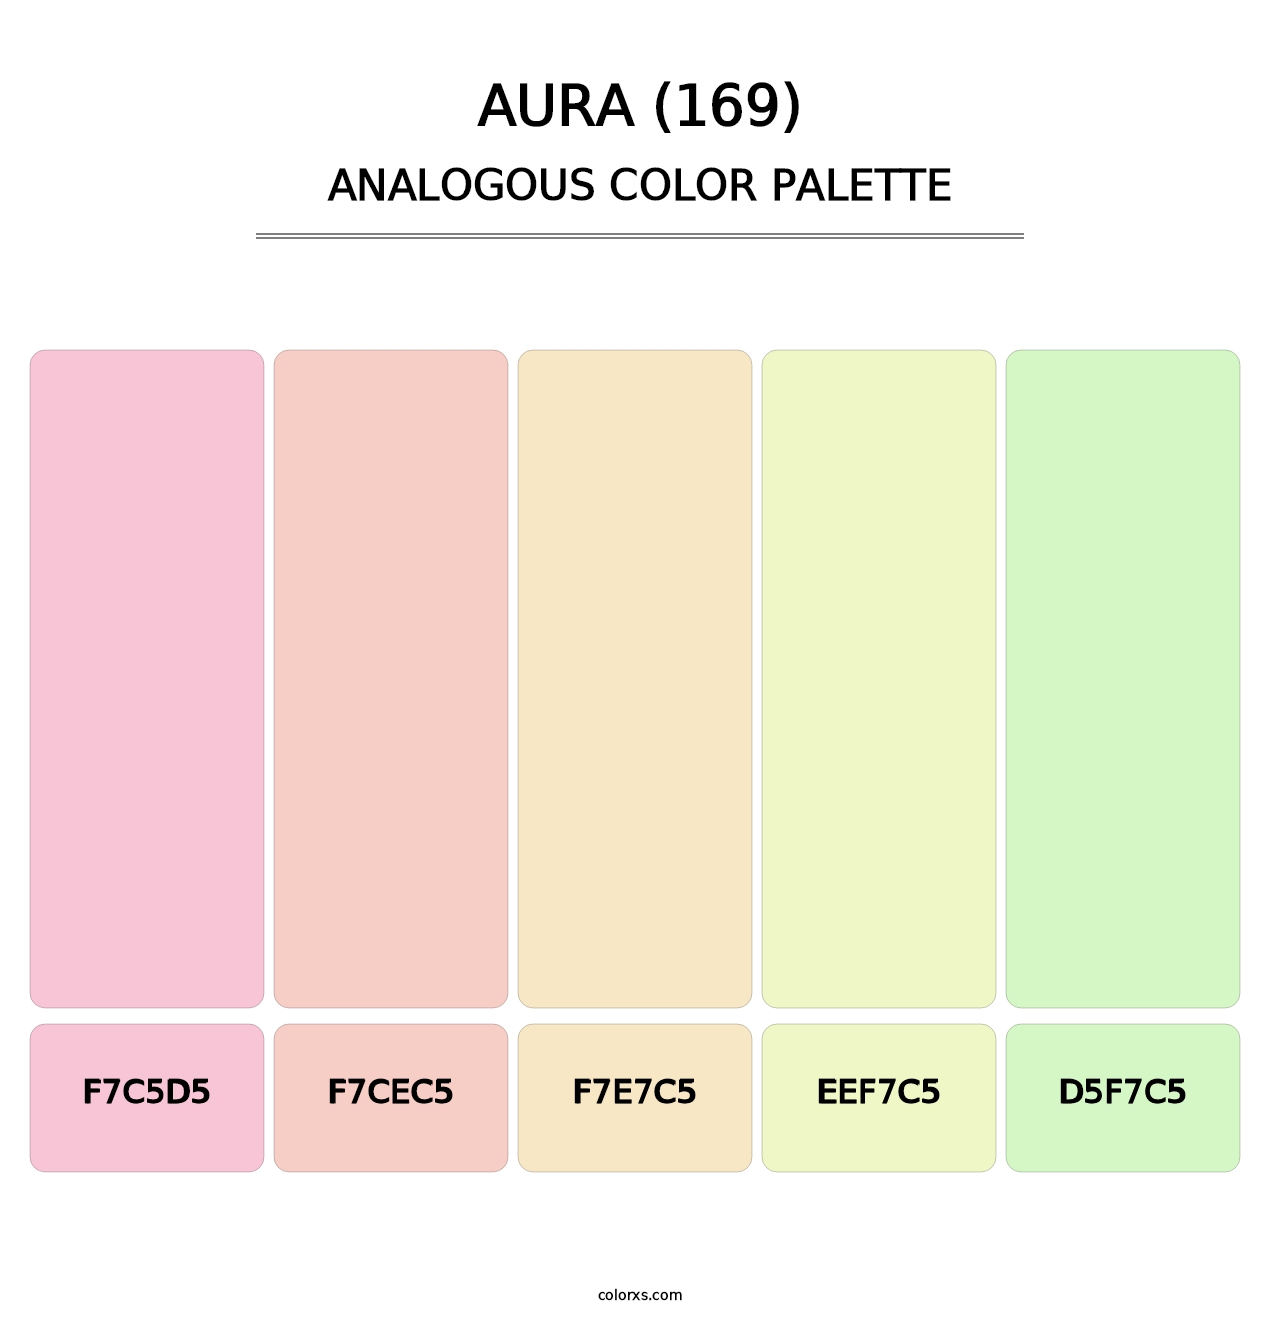 Aura (169) - Analogous Color Palette